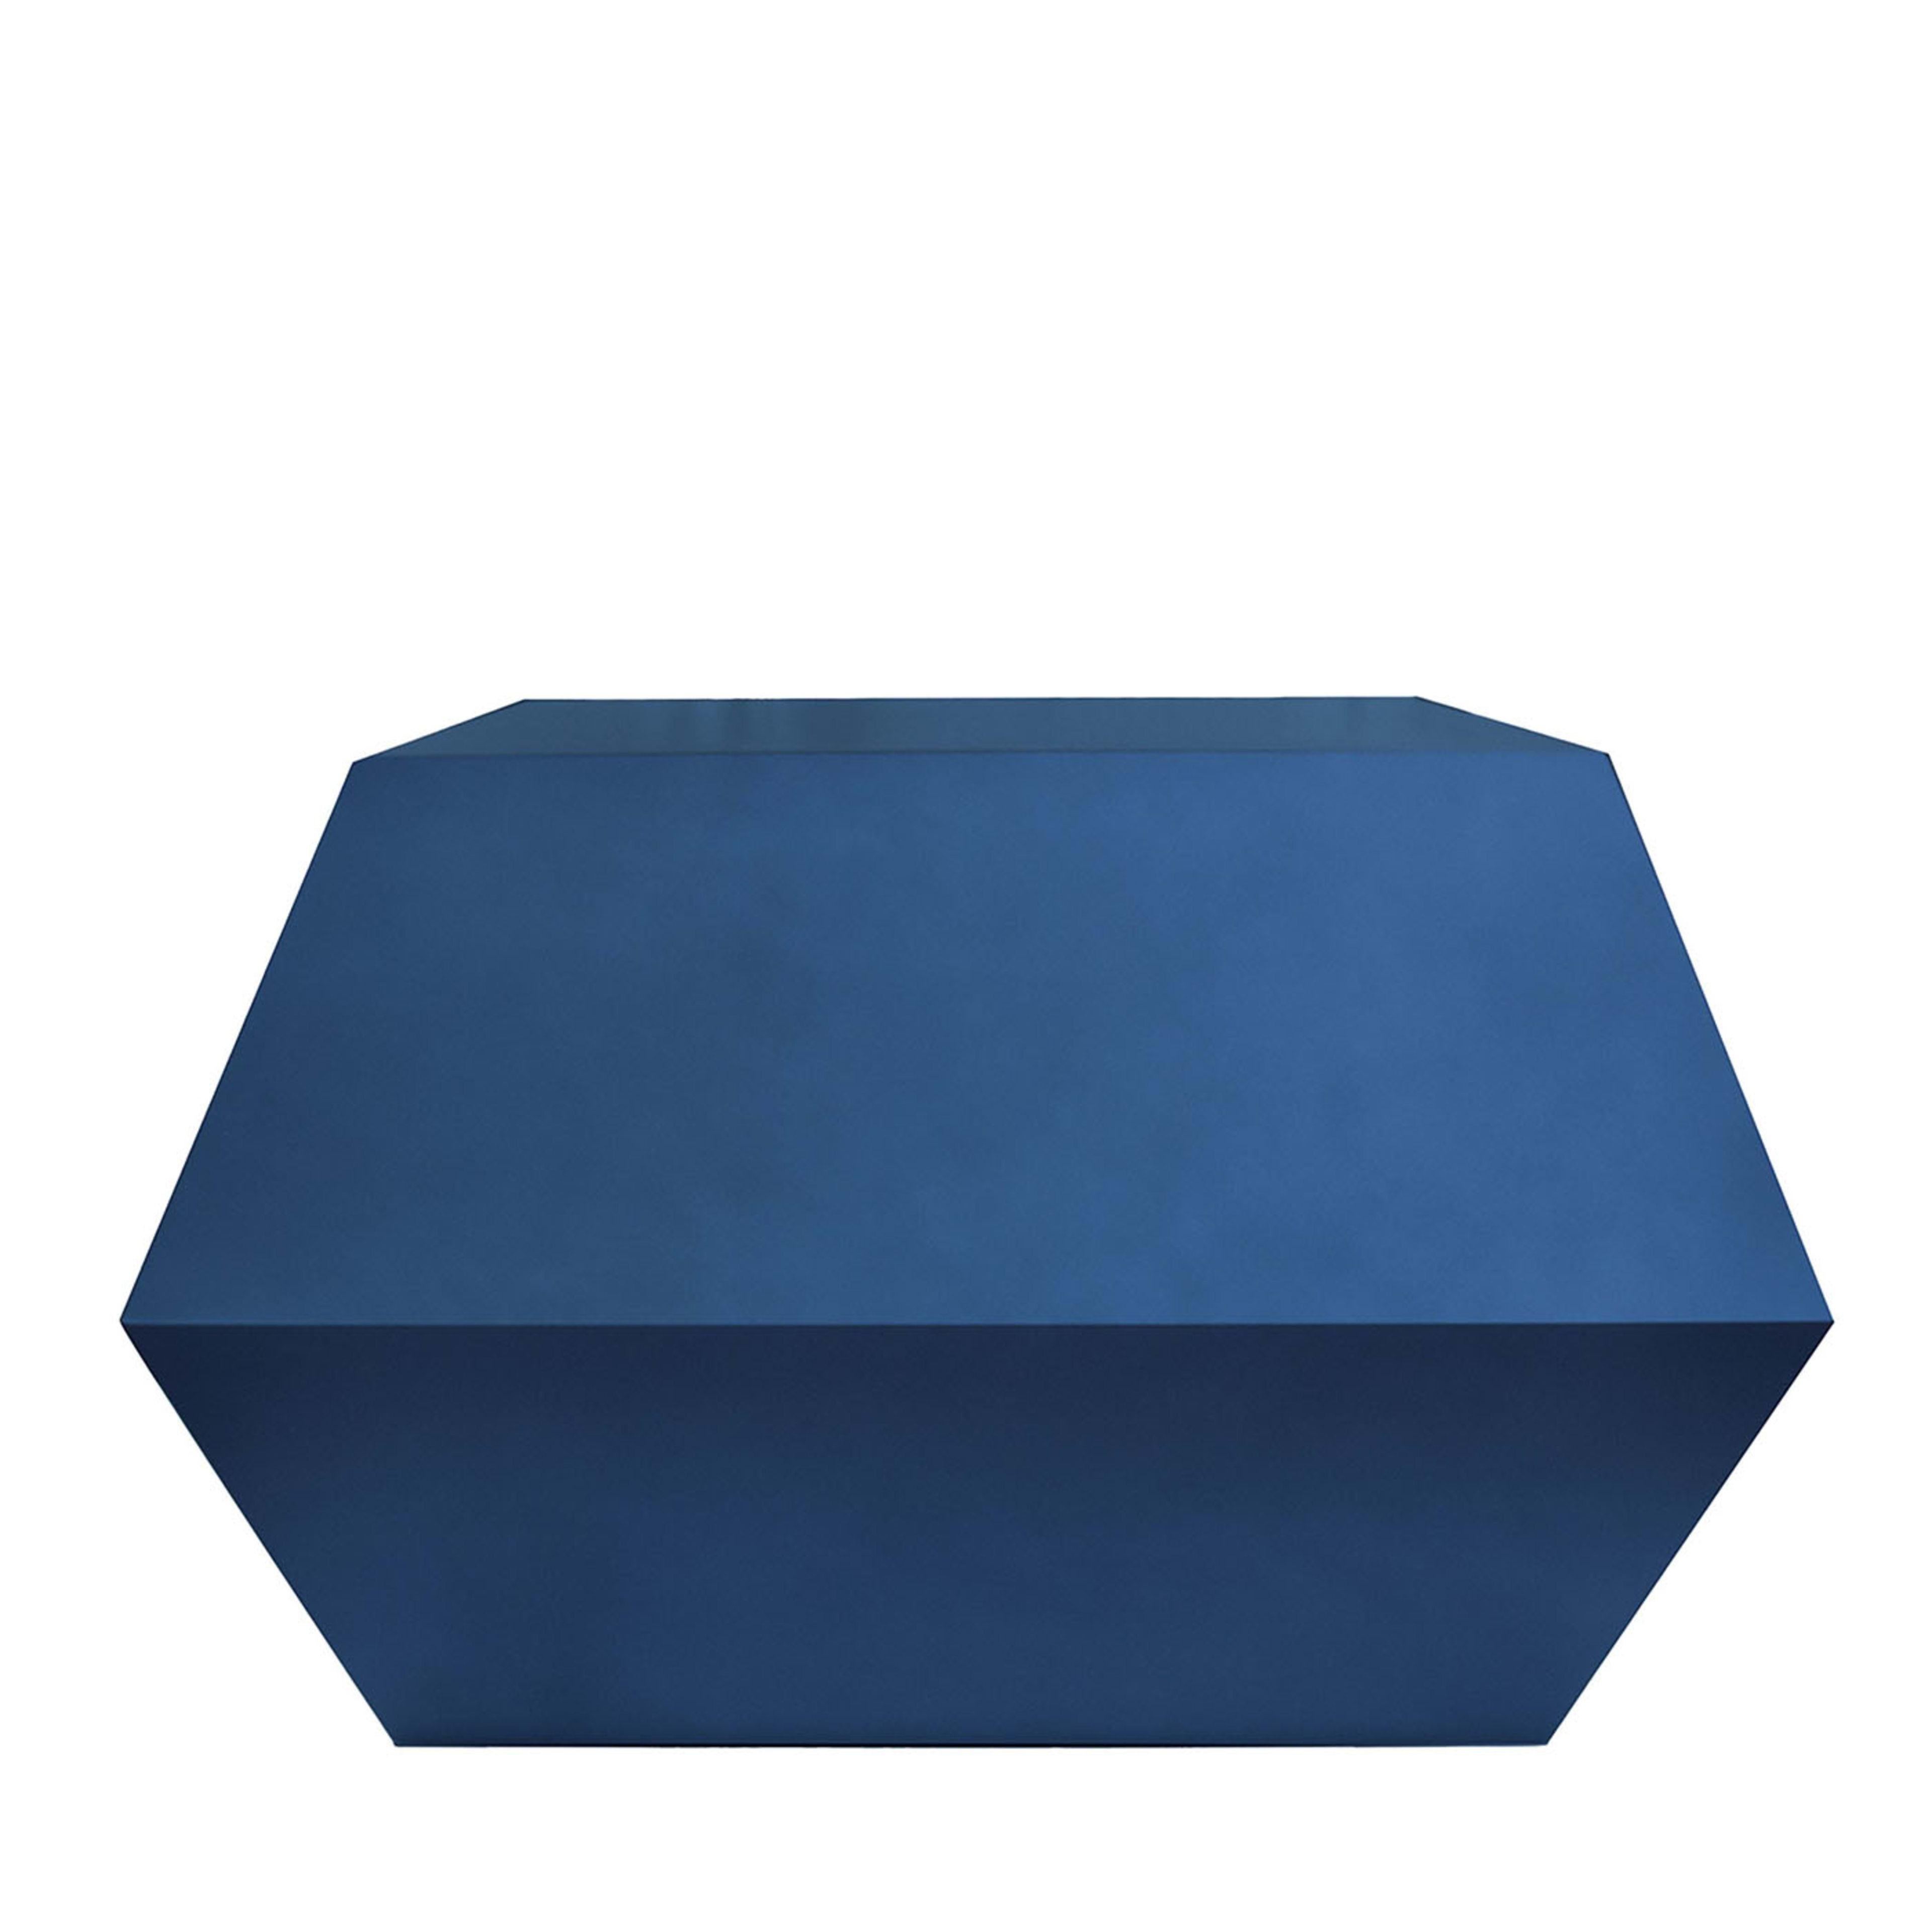 Ode aux formes géométriques pures, cette table basse de Carlo Rampazzi s'inspire d'un diamant pour sa structure en bois facetté laqué en bleu. Idéalement associée à la table basse Pop & Op Hourglass - disponible dans le catalogue Artemest - pour un